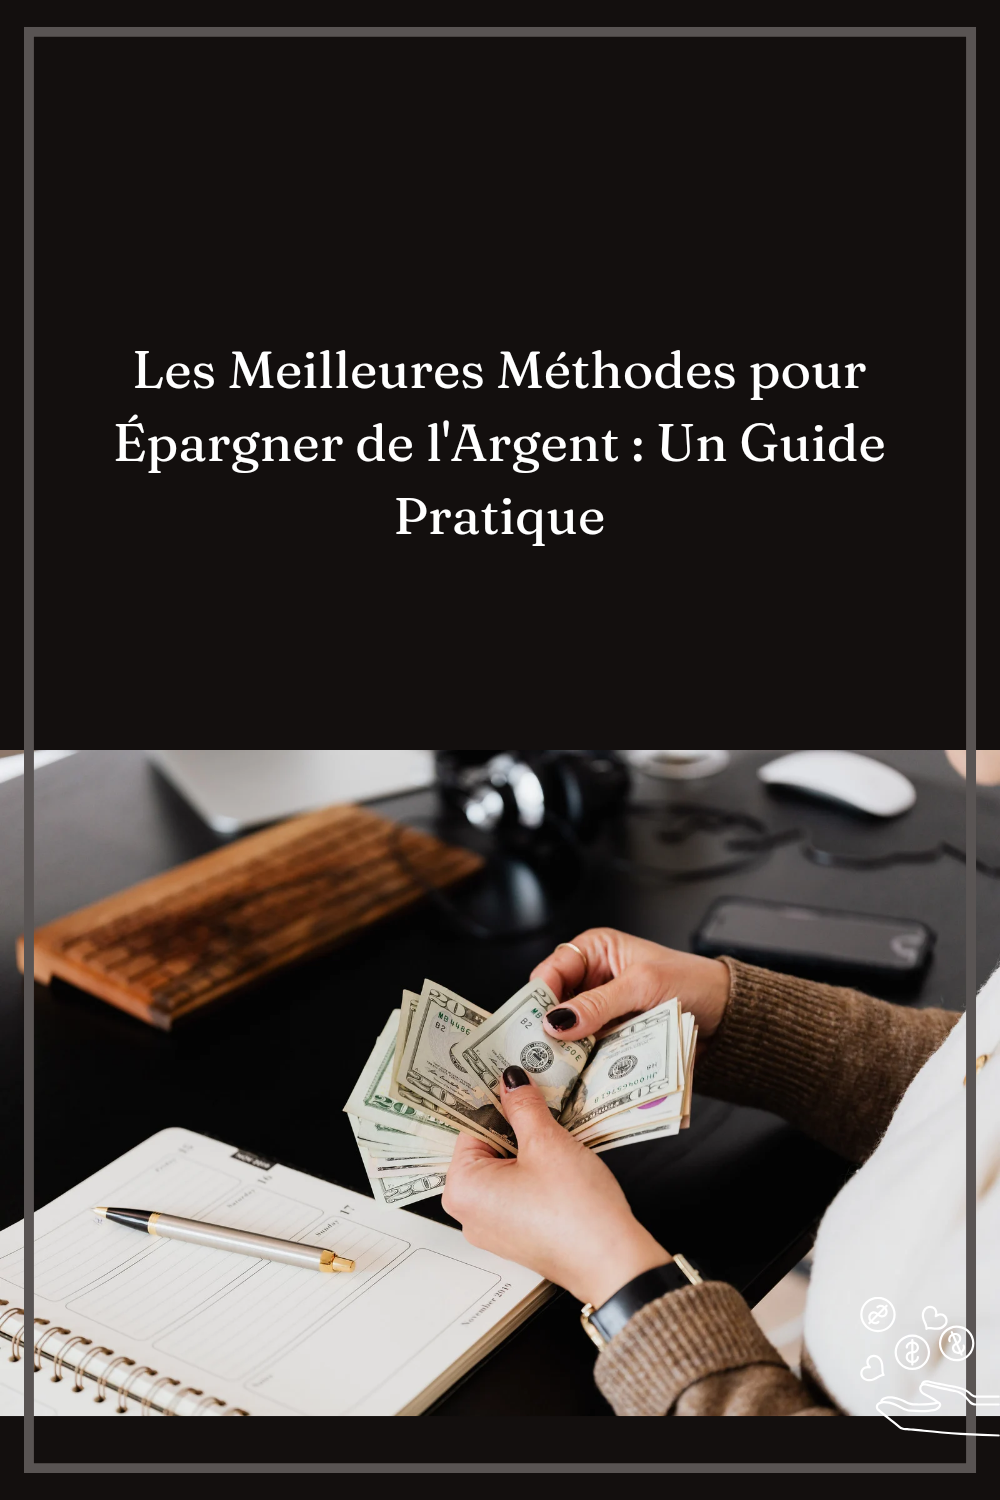 You are currently viewing Les Meilleures Méthodes pour Épargner de l’Argent : Un Guide Pratique